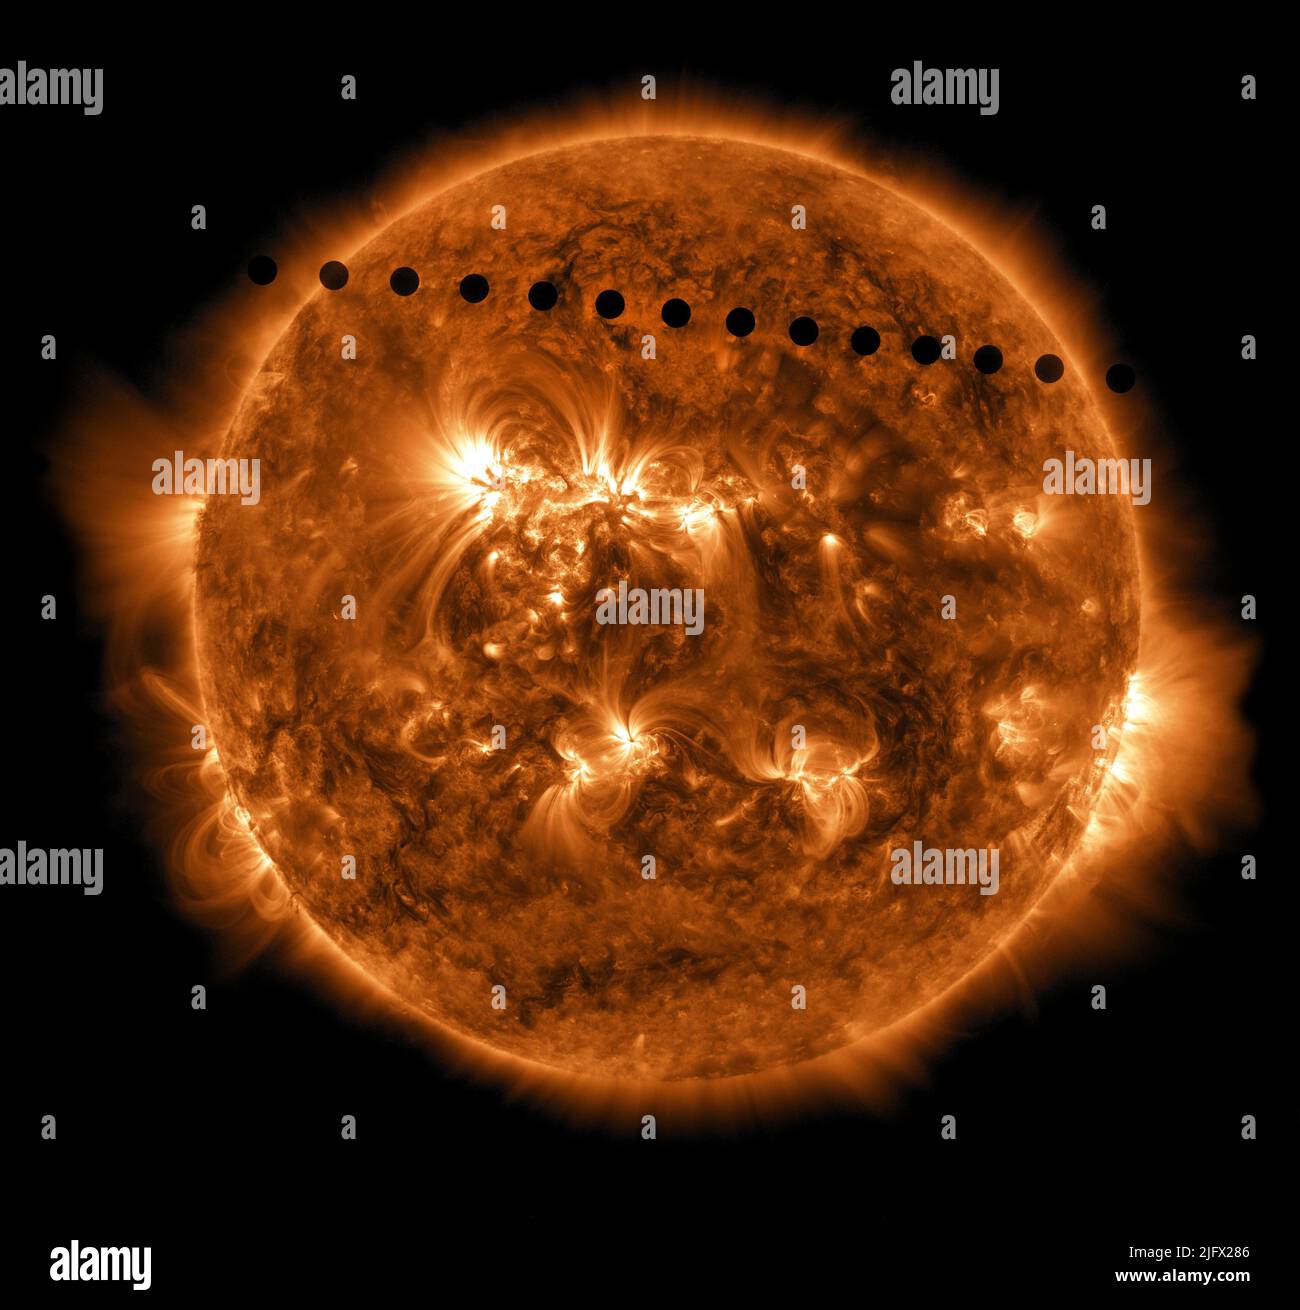 Der Transit der Venus über das Gesicht der Sonne. Dieses selten beobachtete Ereignis geschieht paarweise im Abstand von acht Jahren, die um 105 oder 121 Jahre voneinander getrennt sind. Am 5. Juni 2012 war der vorherige Transit im Jahr 2004 und der nächste wird erst 2117 passieren. Dieses Zeitrafferbild zeigt die Venus, die über die Scheibe der Sonne geht, was etwa sechs Stunden dauerte. Eine optimierte und digital verbesserte Version eines NASA-Bildes / Credit NASA / Solar Dynamics Observatory Stockfoto